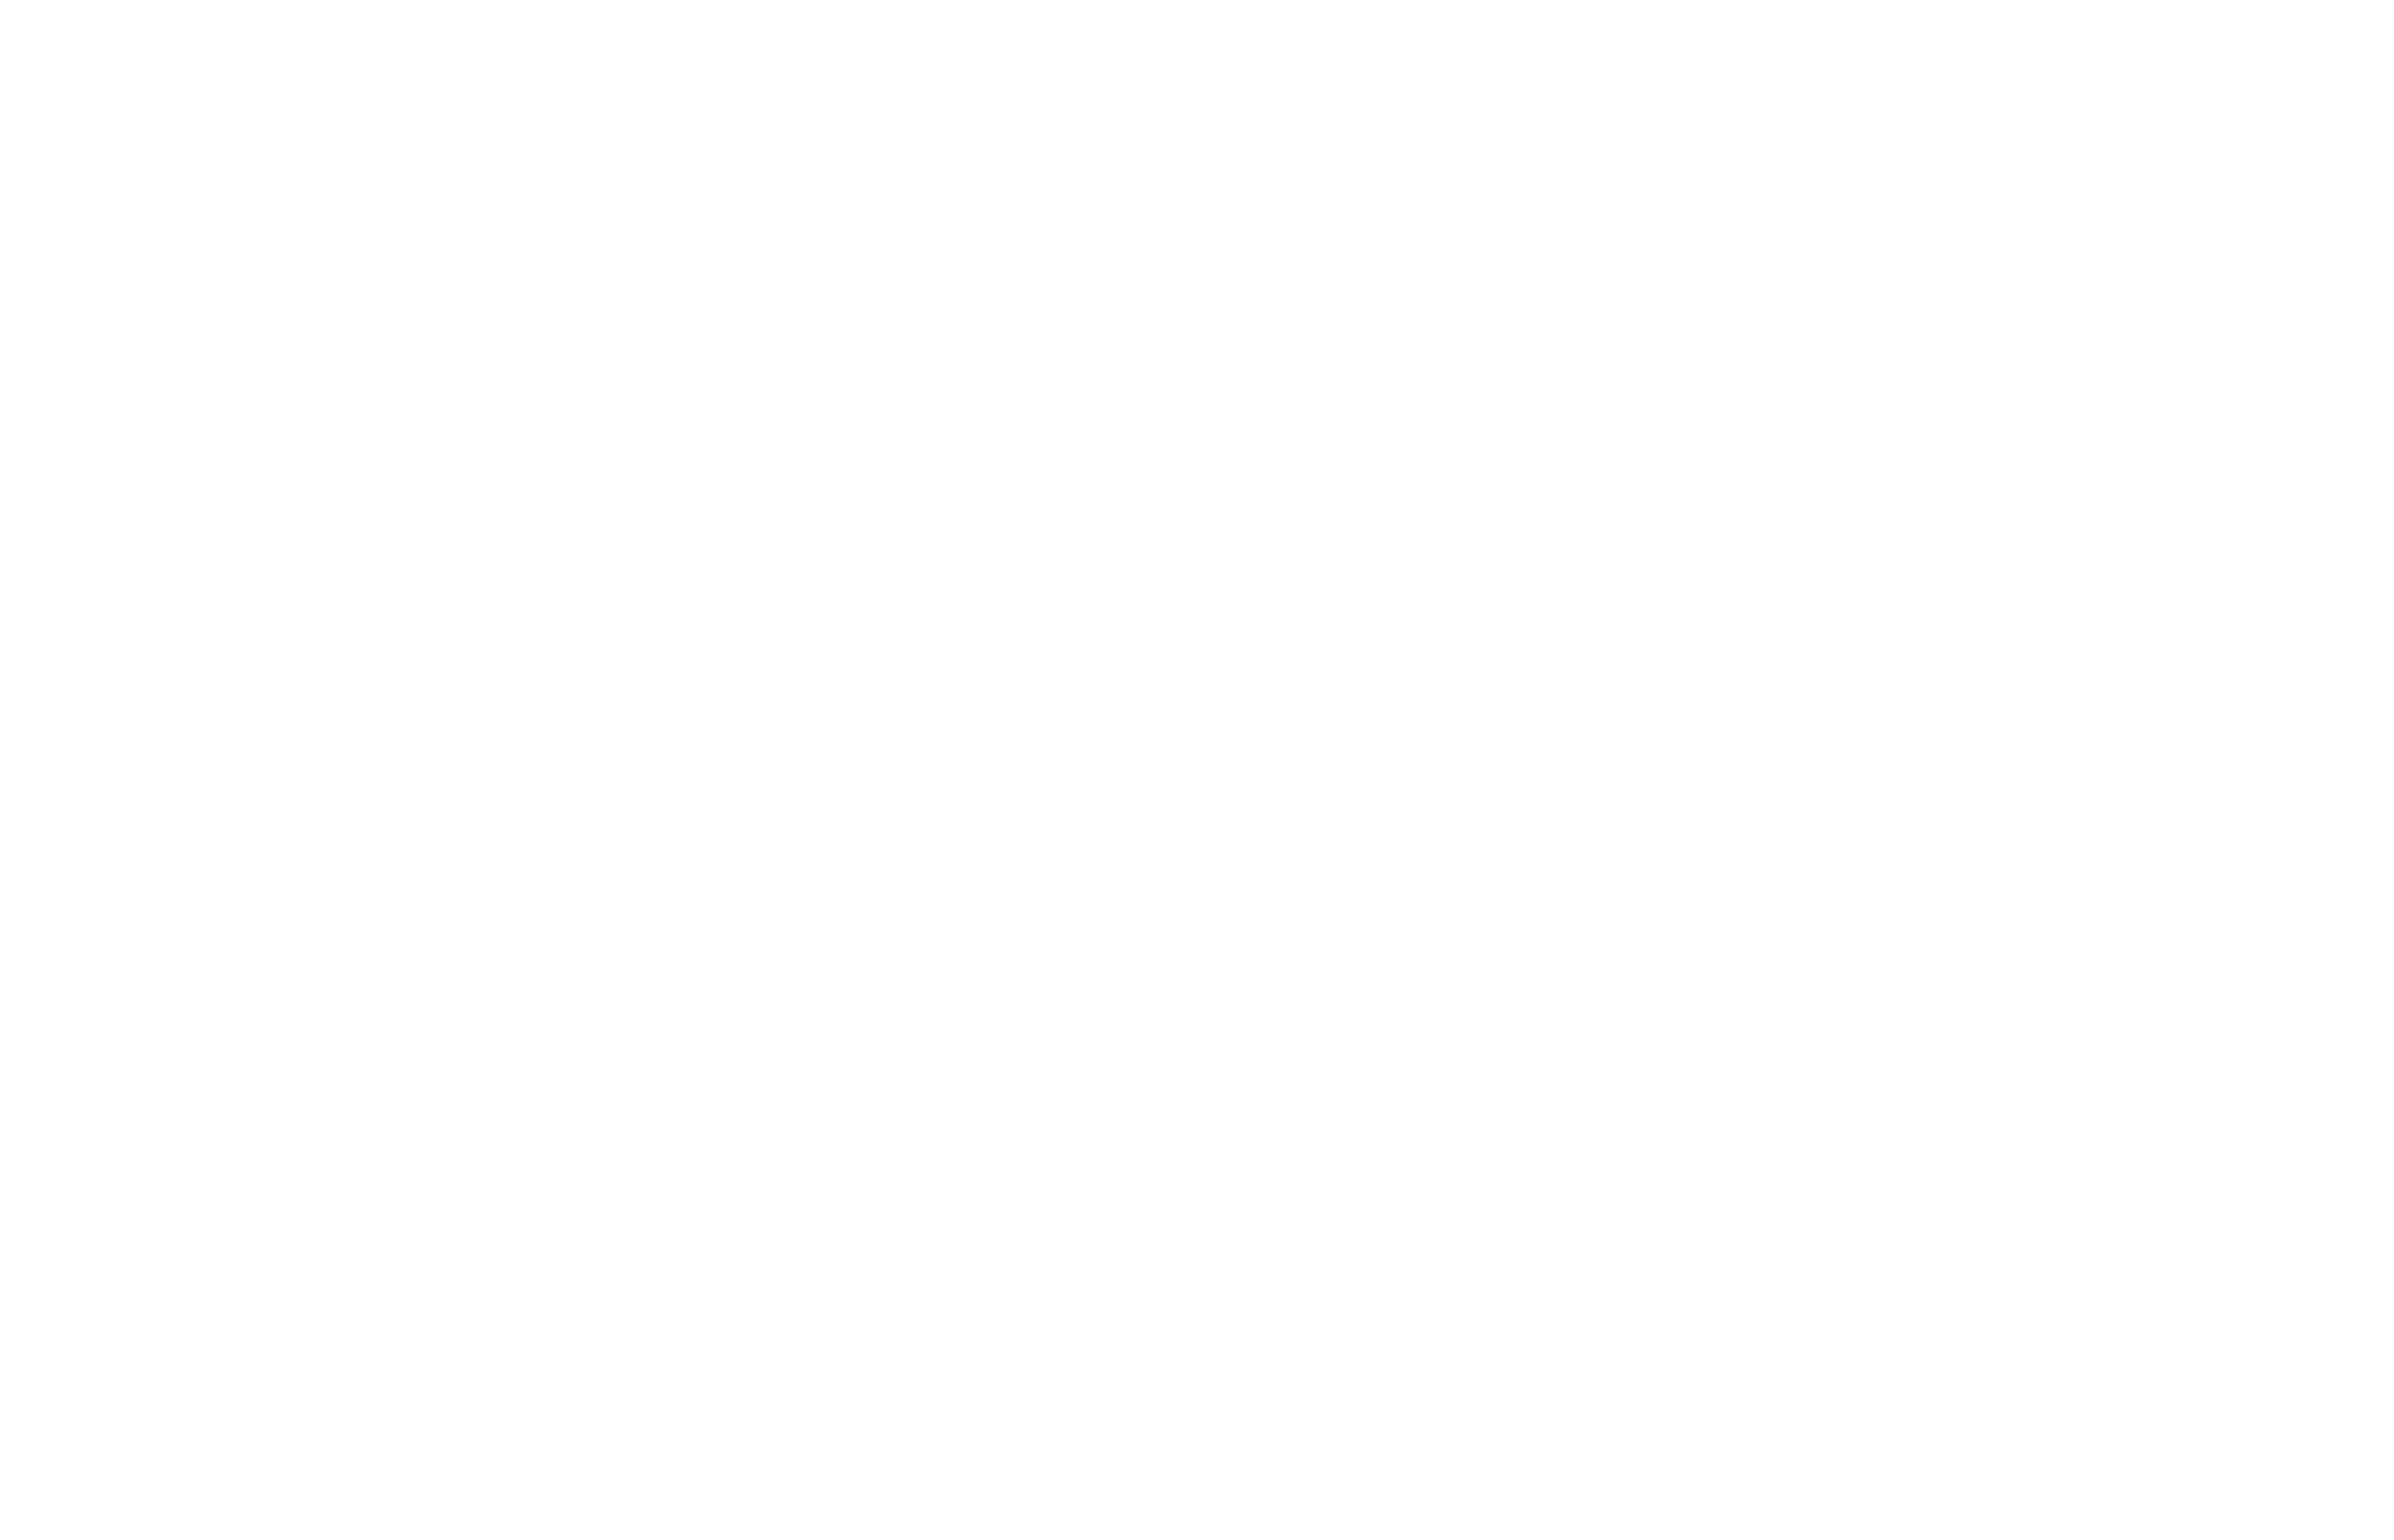 Breakaway Sports